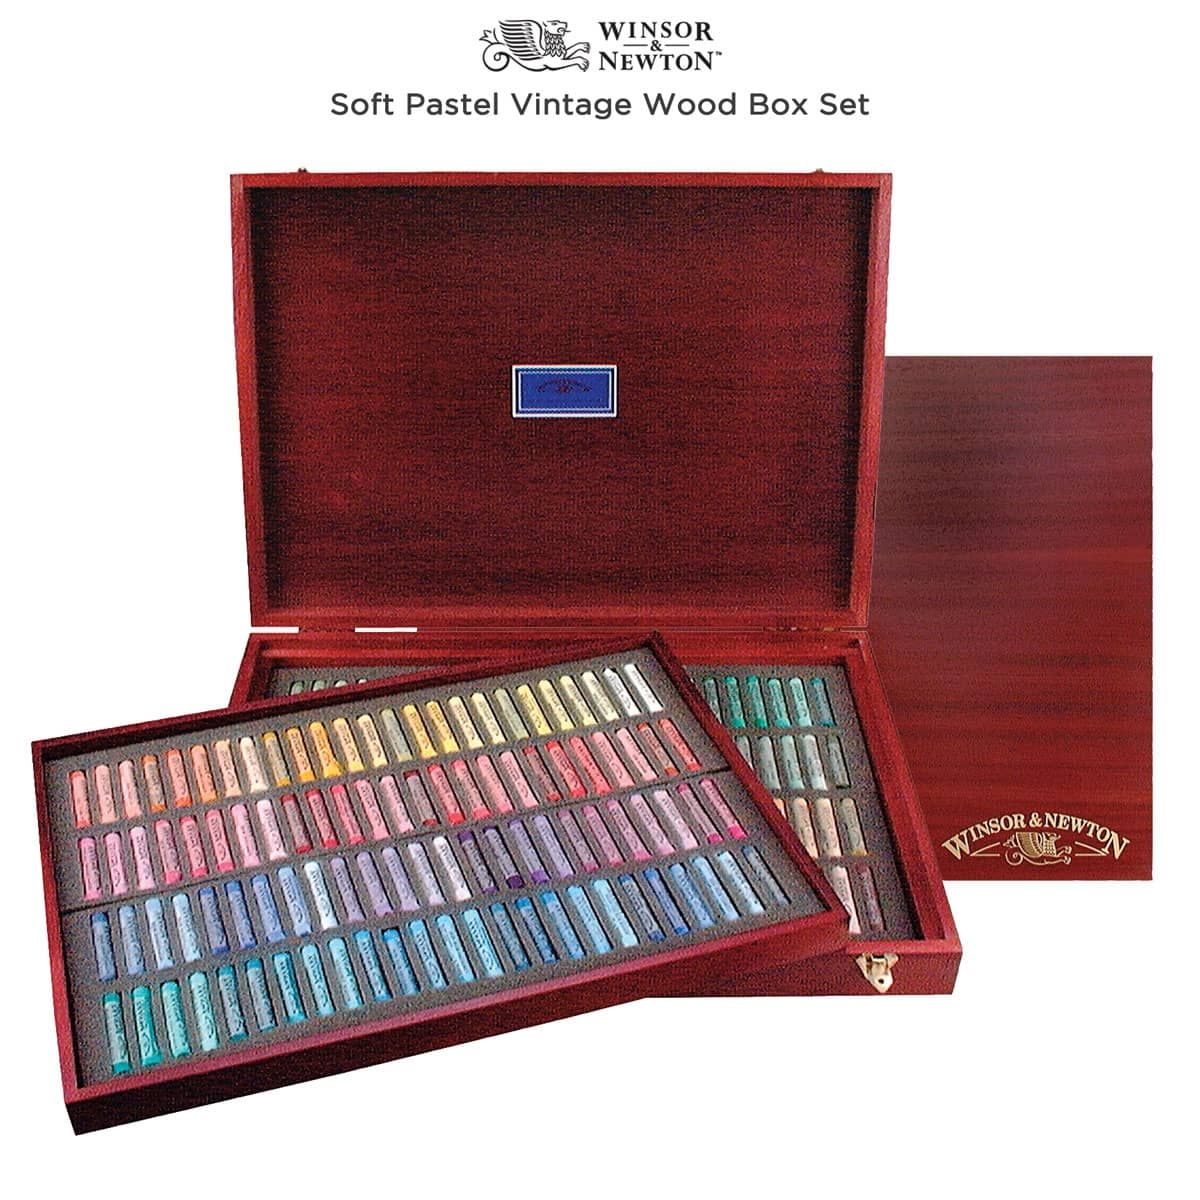 Vintage wooden box set of 200 soft pastels